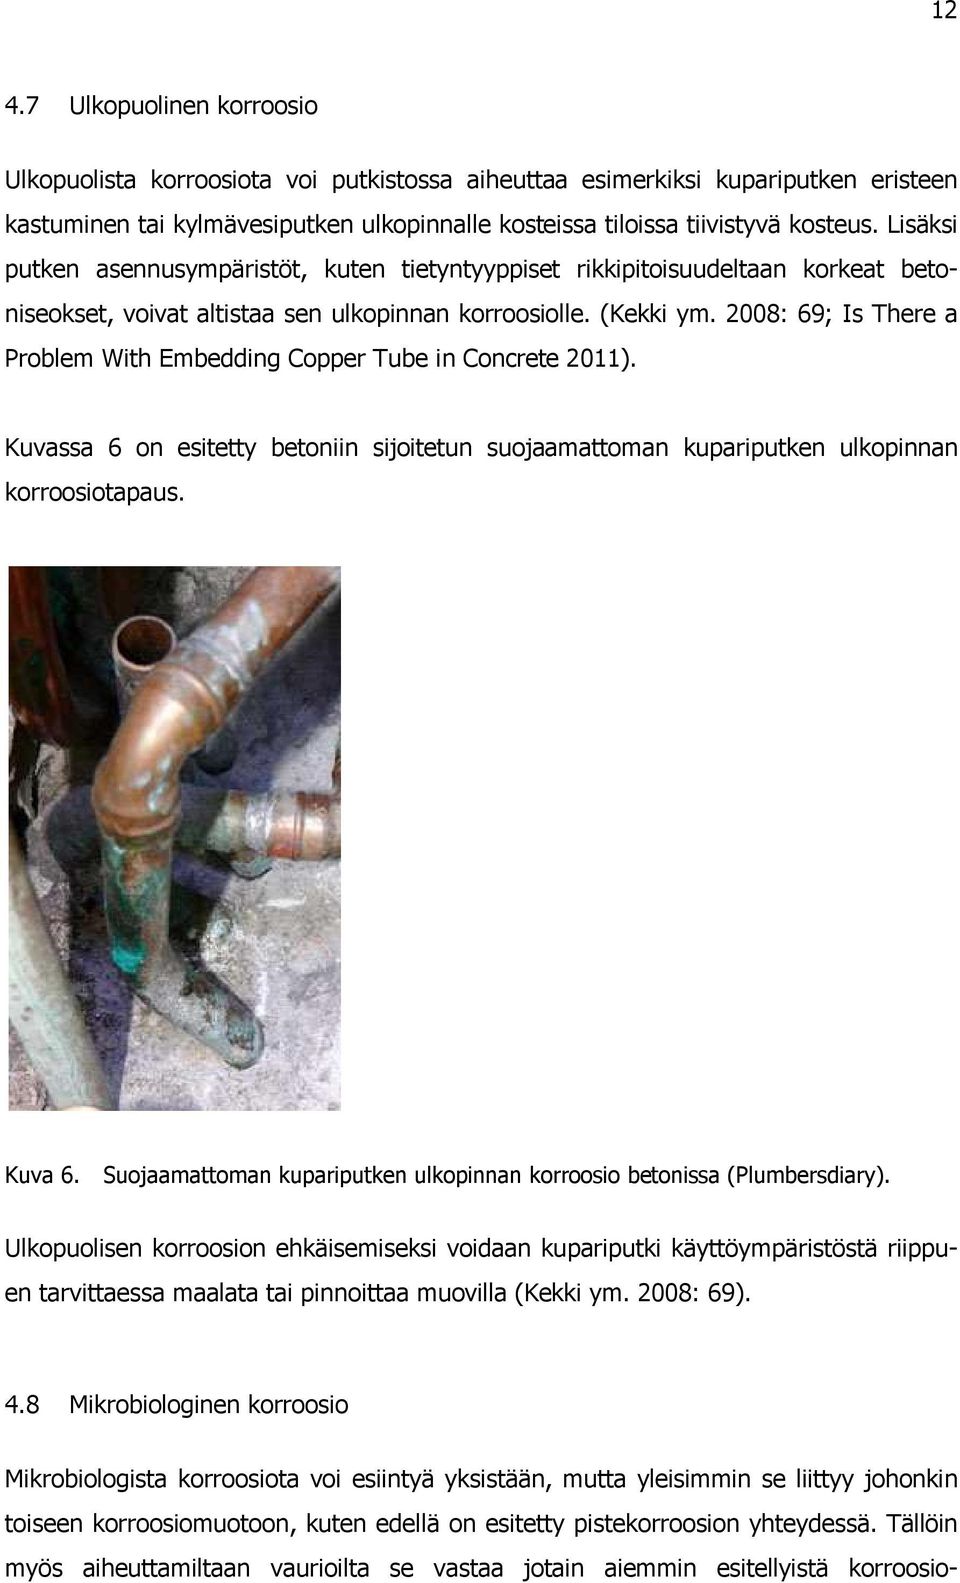 2008: 69; Is There a Problem With Embedding Copper Tube in Concrete 2011). Kuvassa 6 on esitetty betoniin sijoitetun suojaamattoman kupariputken ulkopinnan korroosiotapaus. Kuva 6.